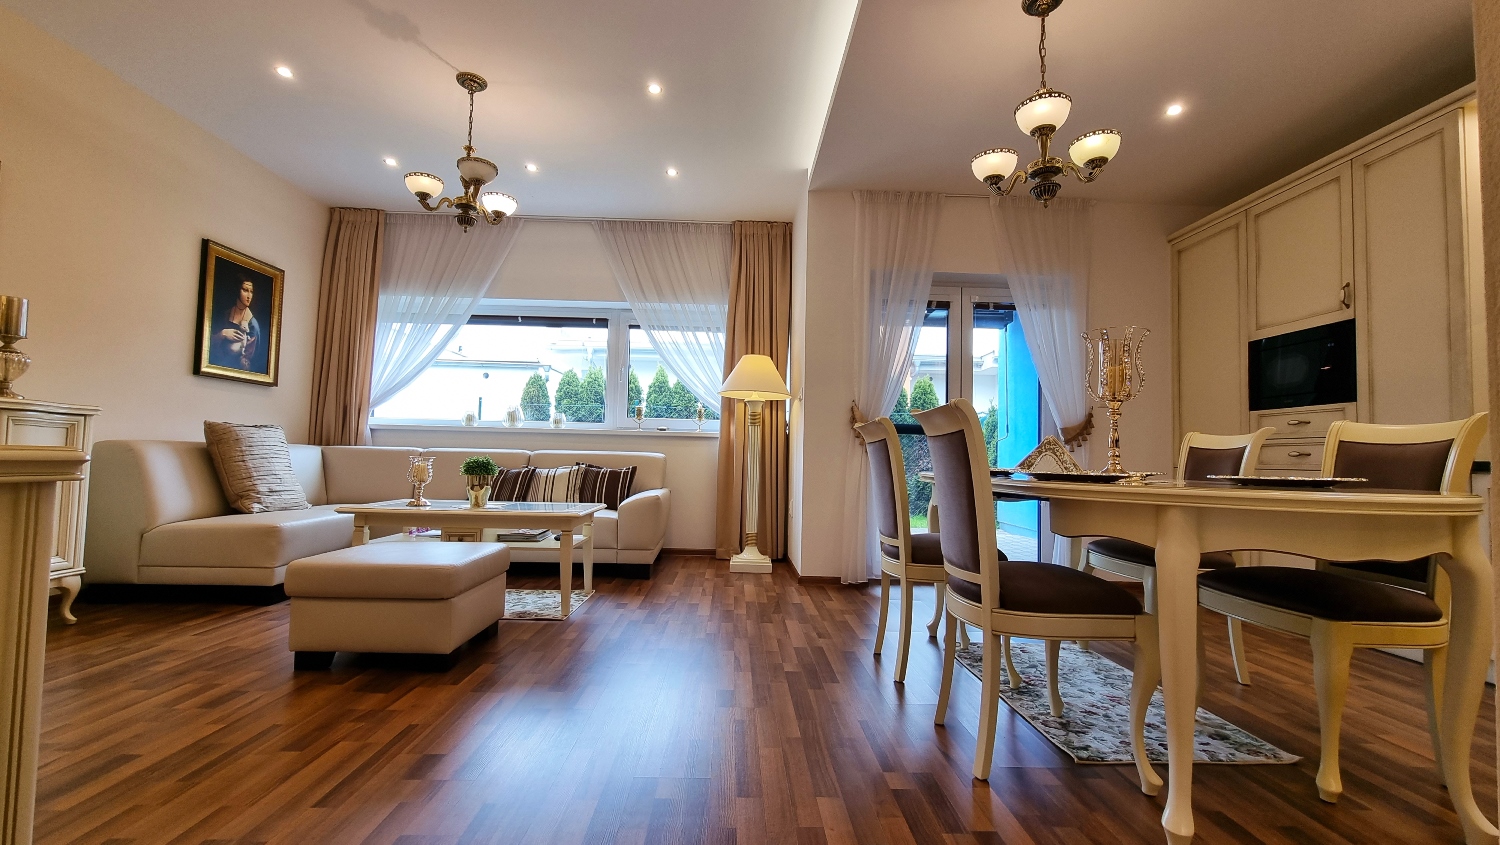 REZERVÁCIA - Exkluzívny 4-izbový rodinný dom typu bungalov, 2 kúpeľne, predaj, Žilina - Juh, Cena: 399.000 €